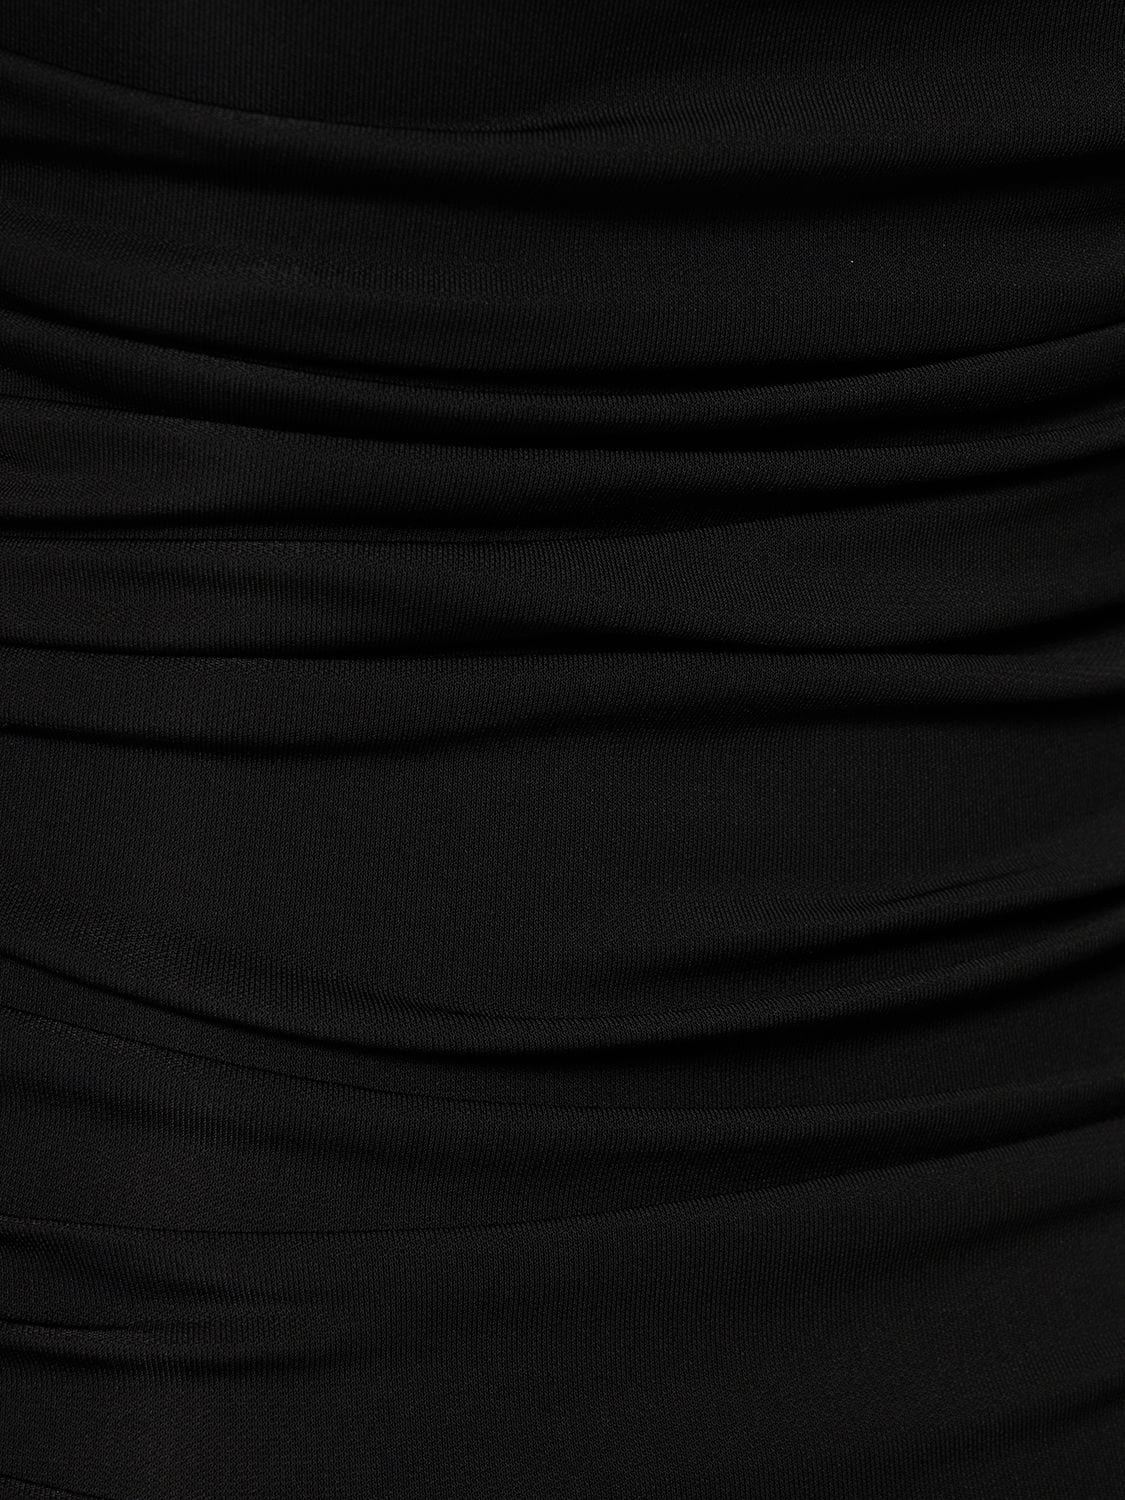 Shop The Andamane Linda Stretch Viscose Jersey Mini Dress In Black